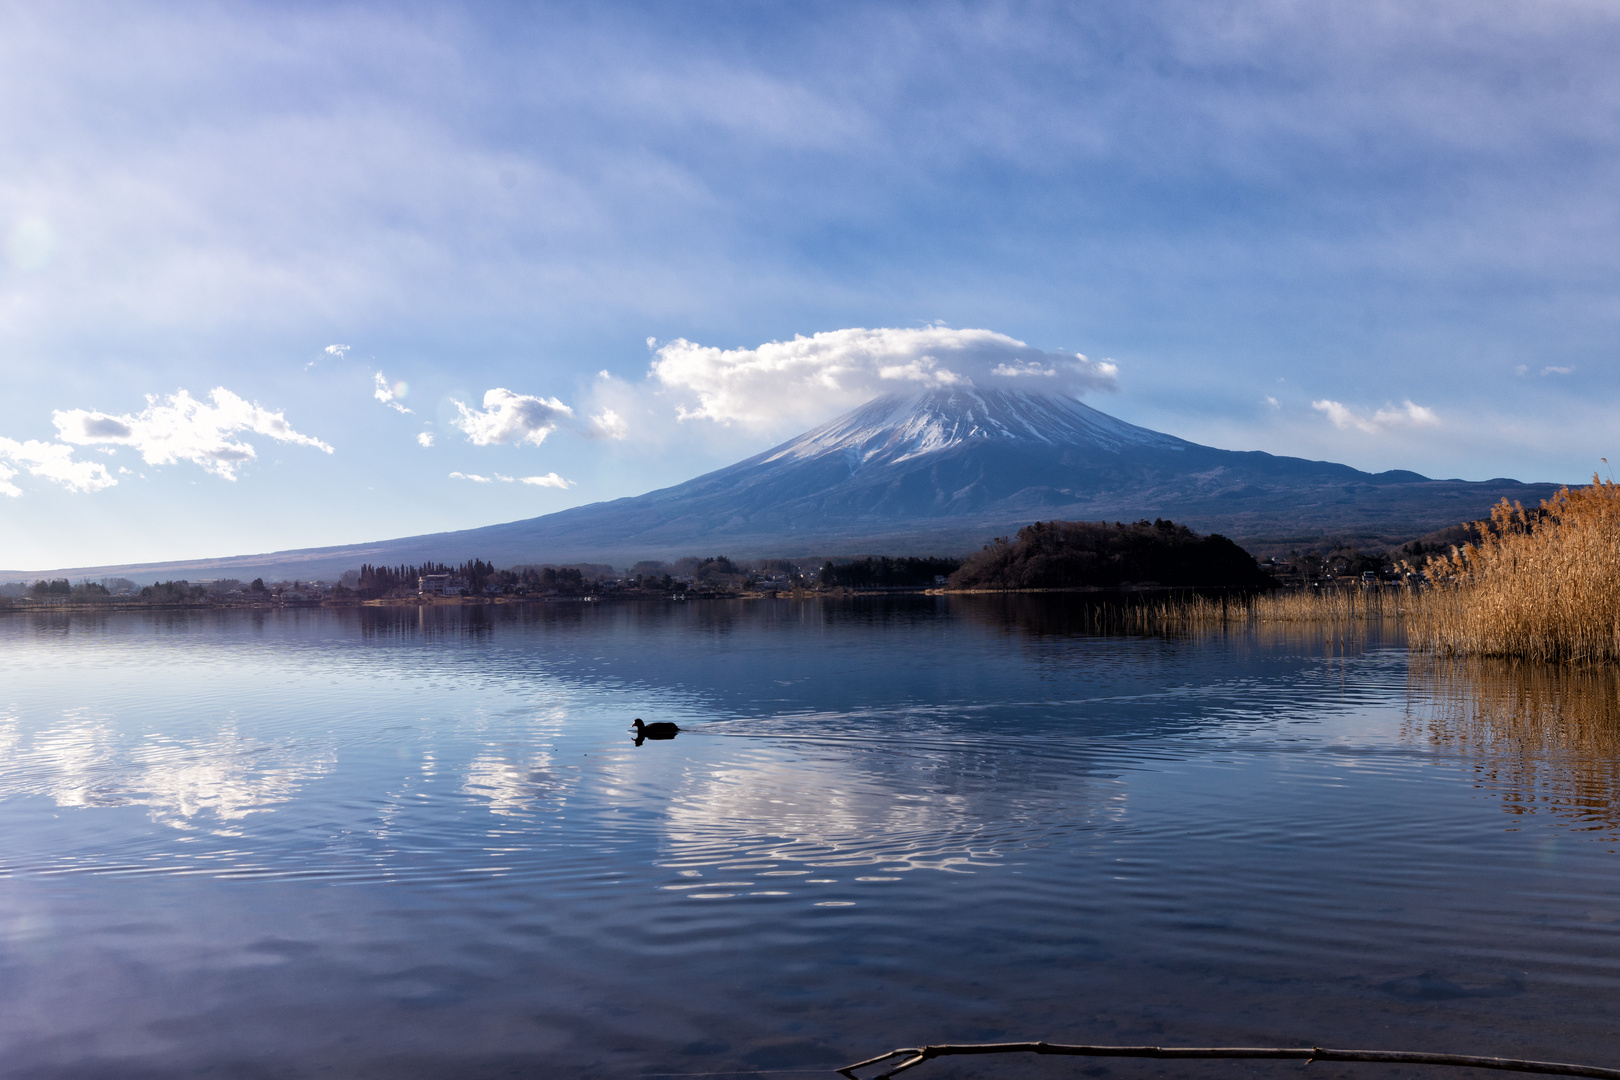 den Blick auf den Fuji gerichtet